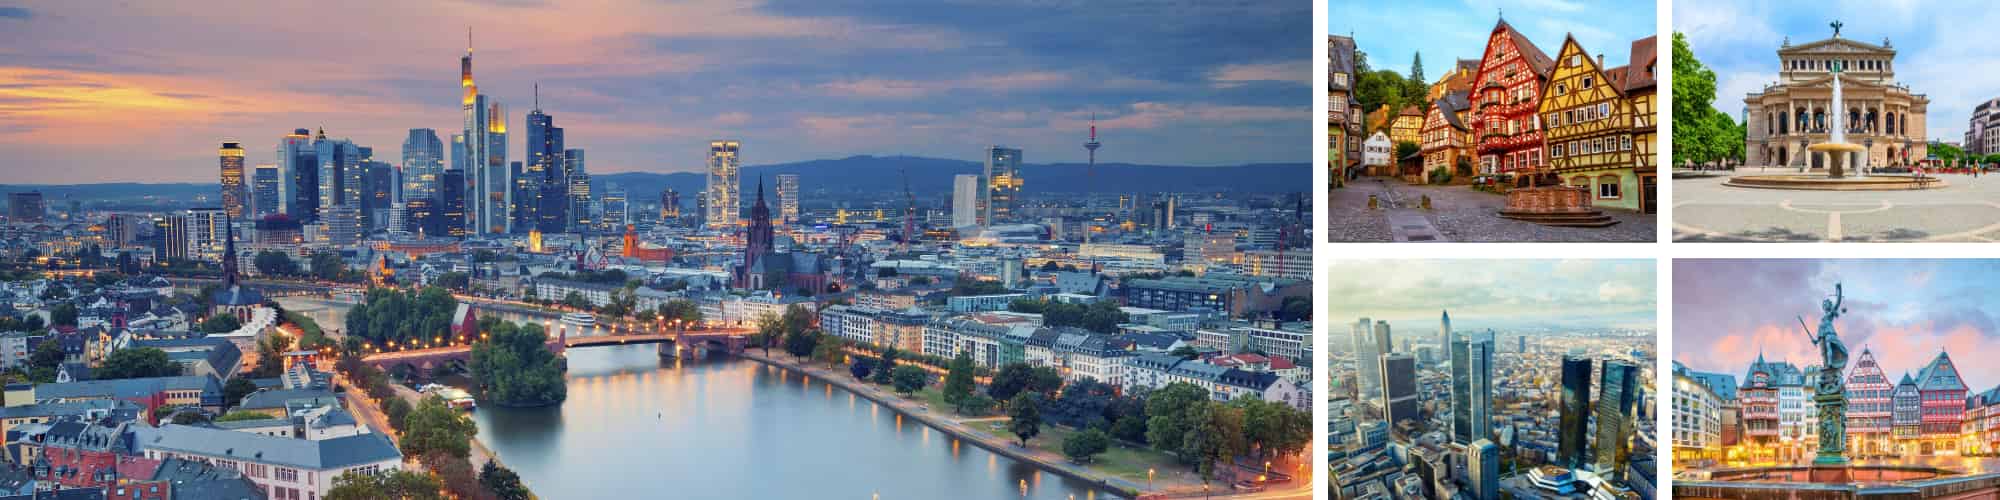 Frankfurt in seinen schönsten Ecken.